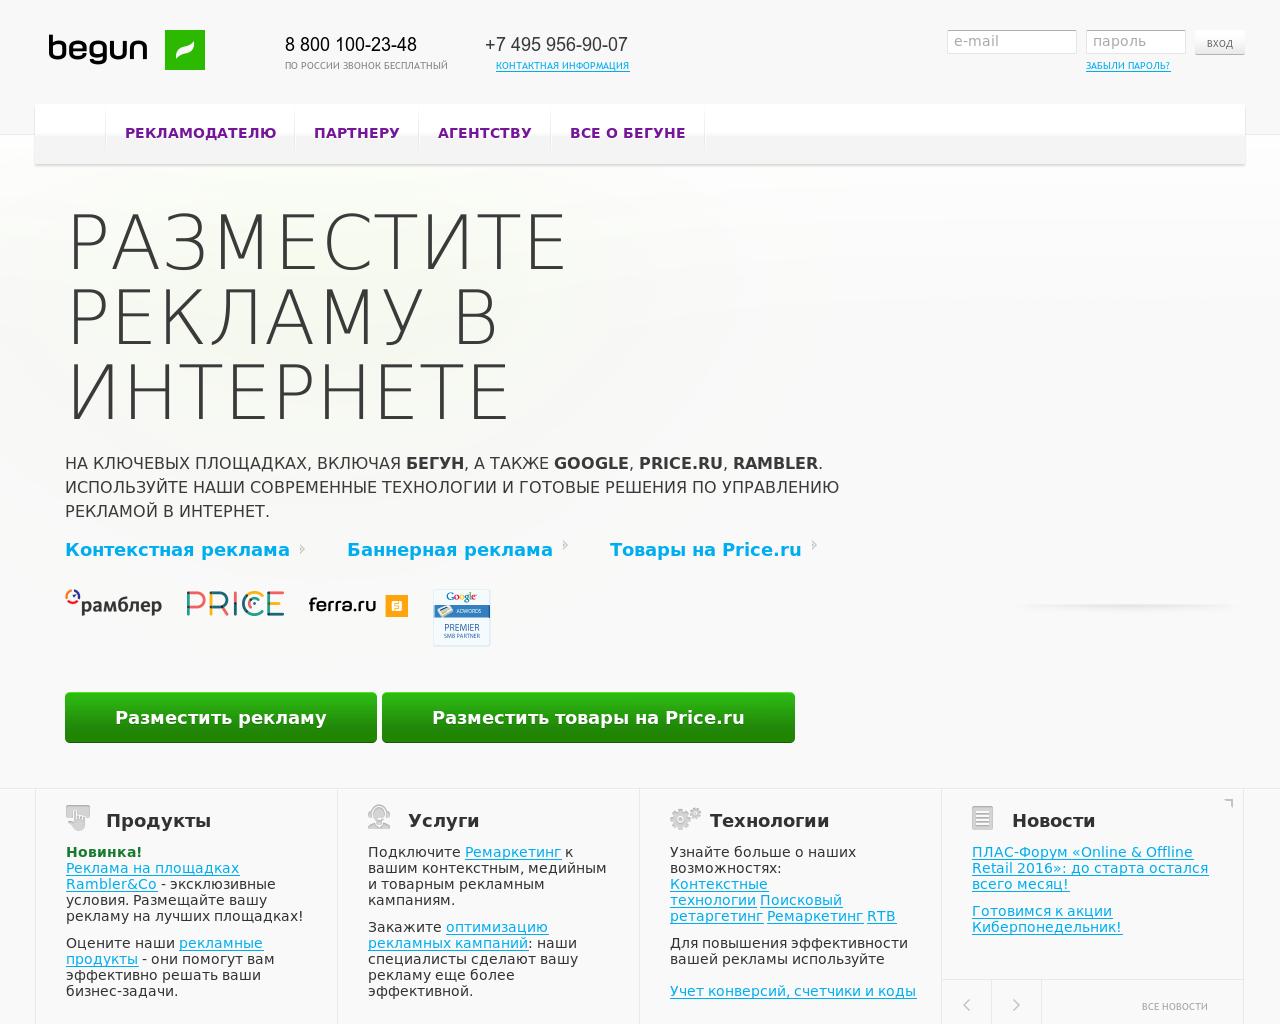 Изображение сайта begun.ru в разрешении 1280x1024